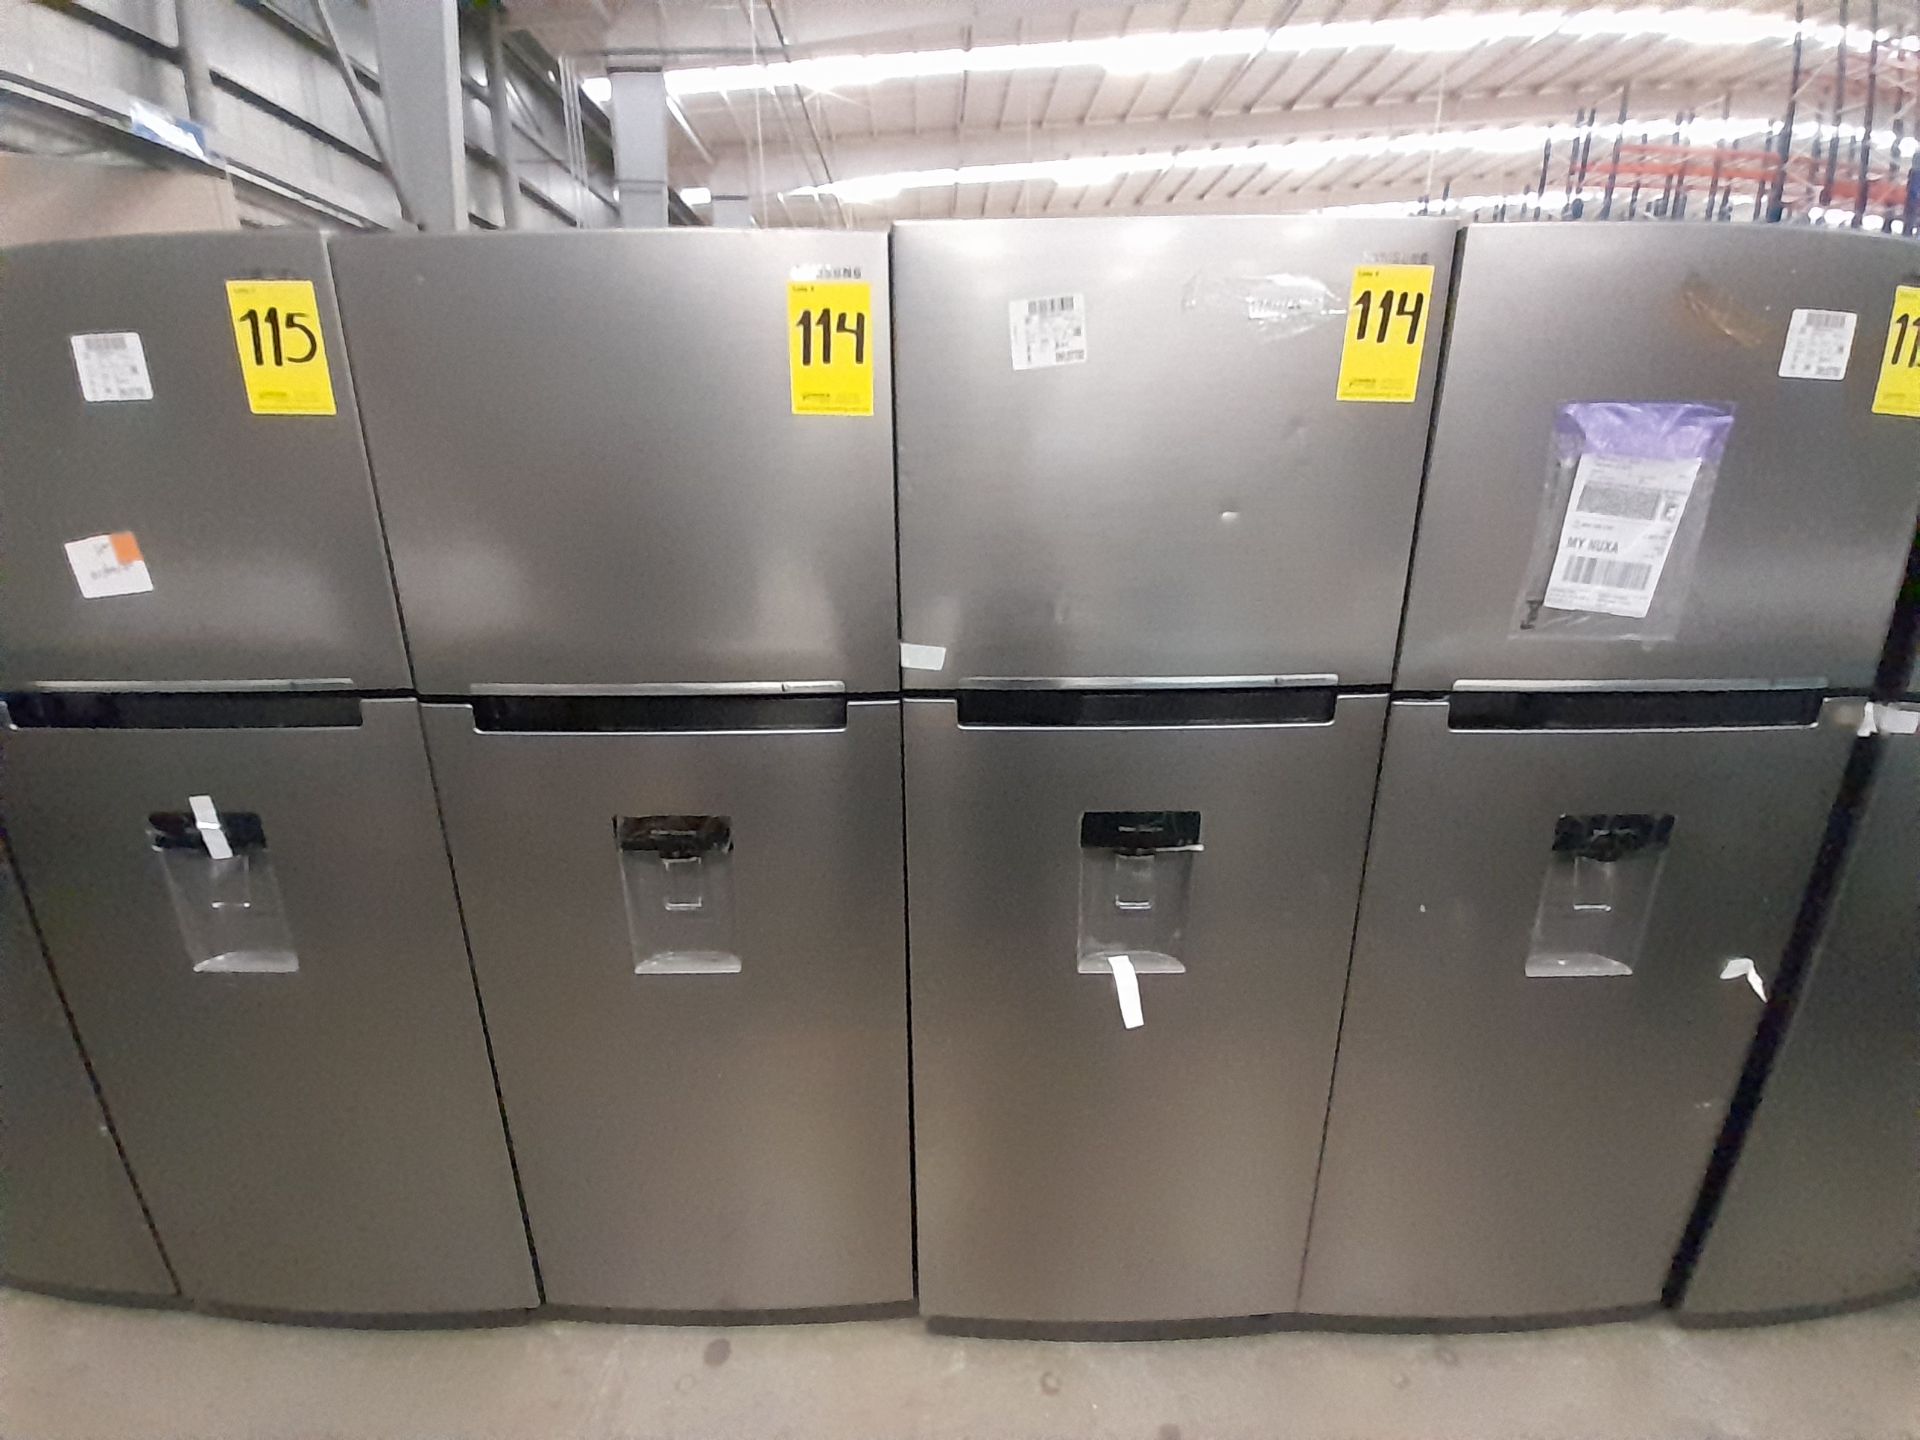 Lote de 2 refrigeradores contiene: 1 refrigerador Marca SAMSUNG, Modelo RT38A57IJS9, Serie 02691M,